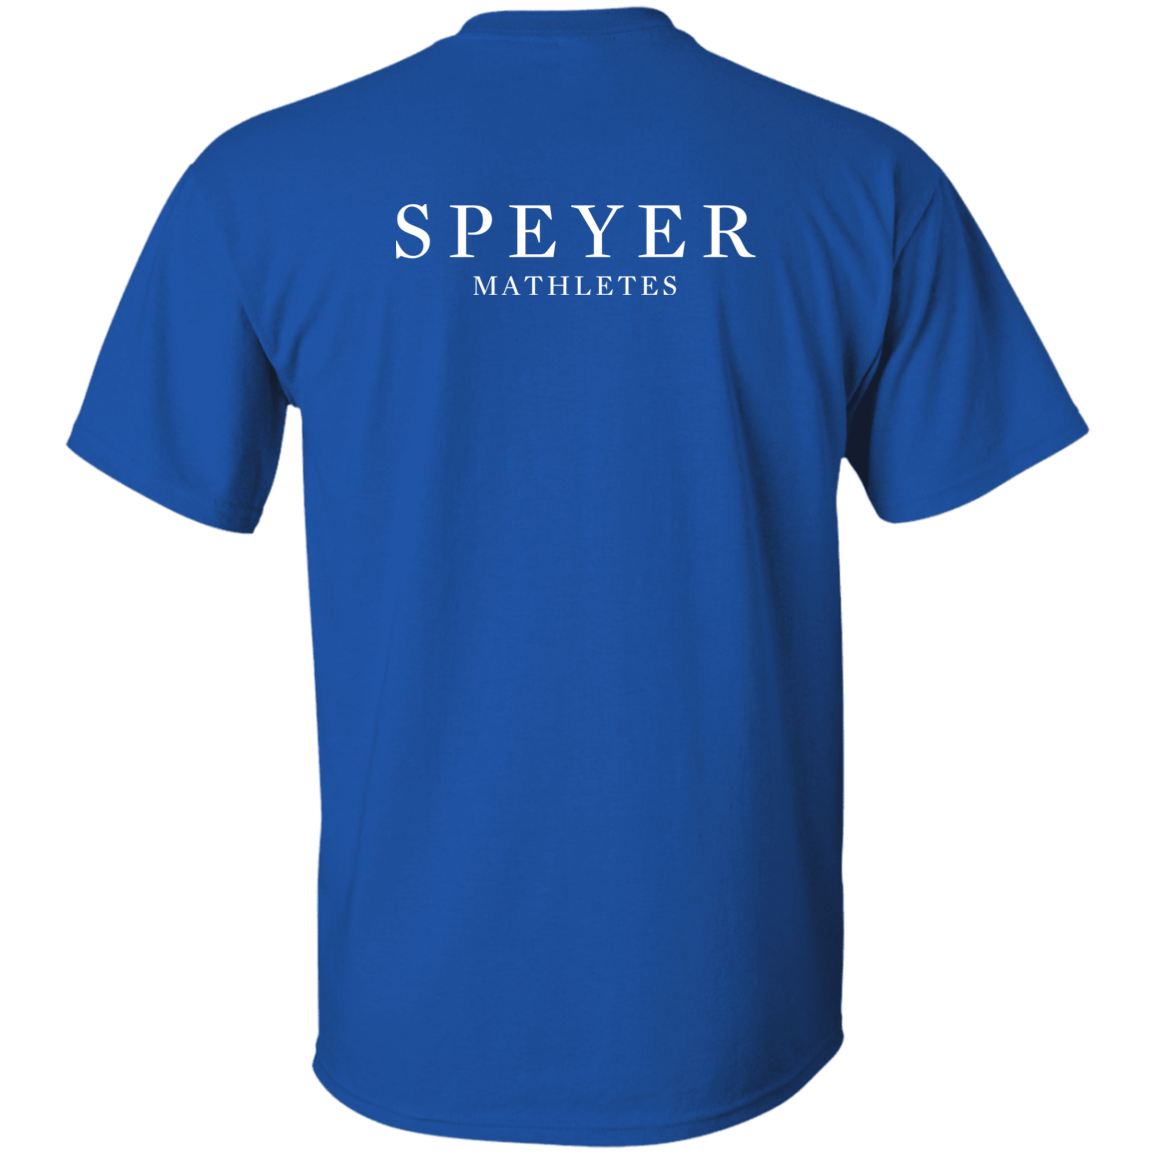 Speyer Mathletes T-Shirt, Youth Sizes